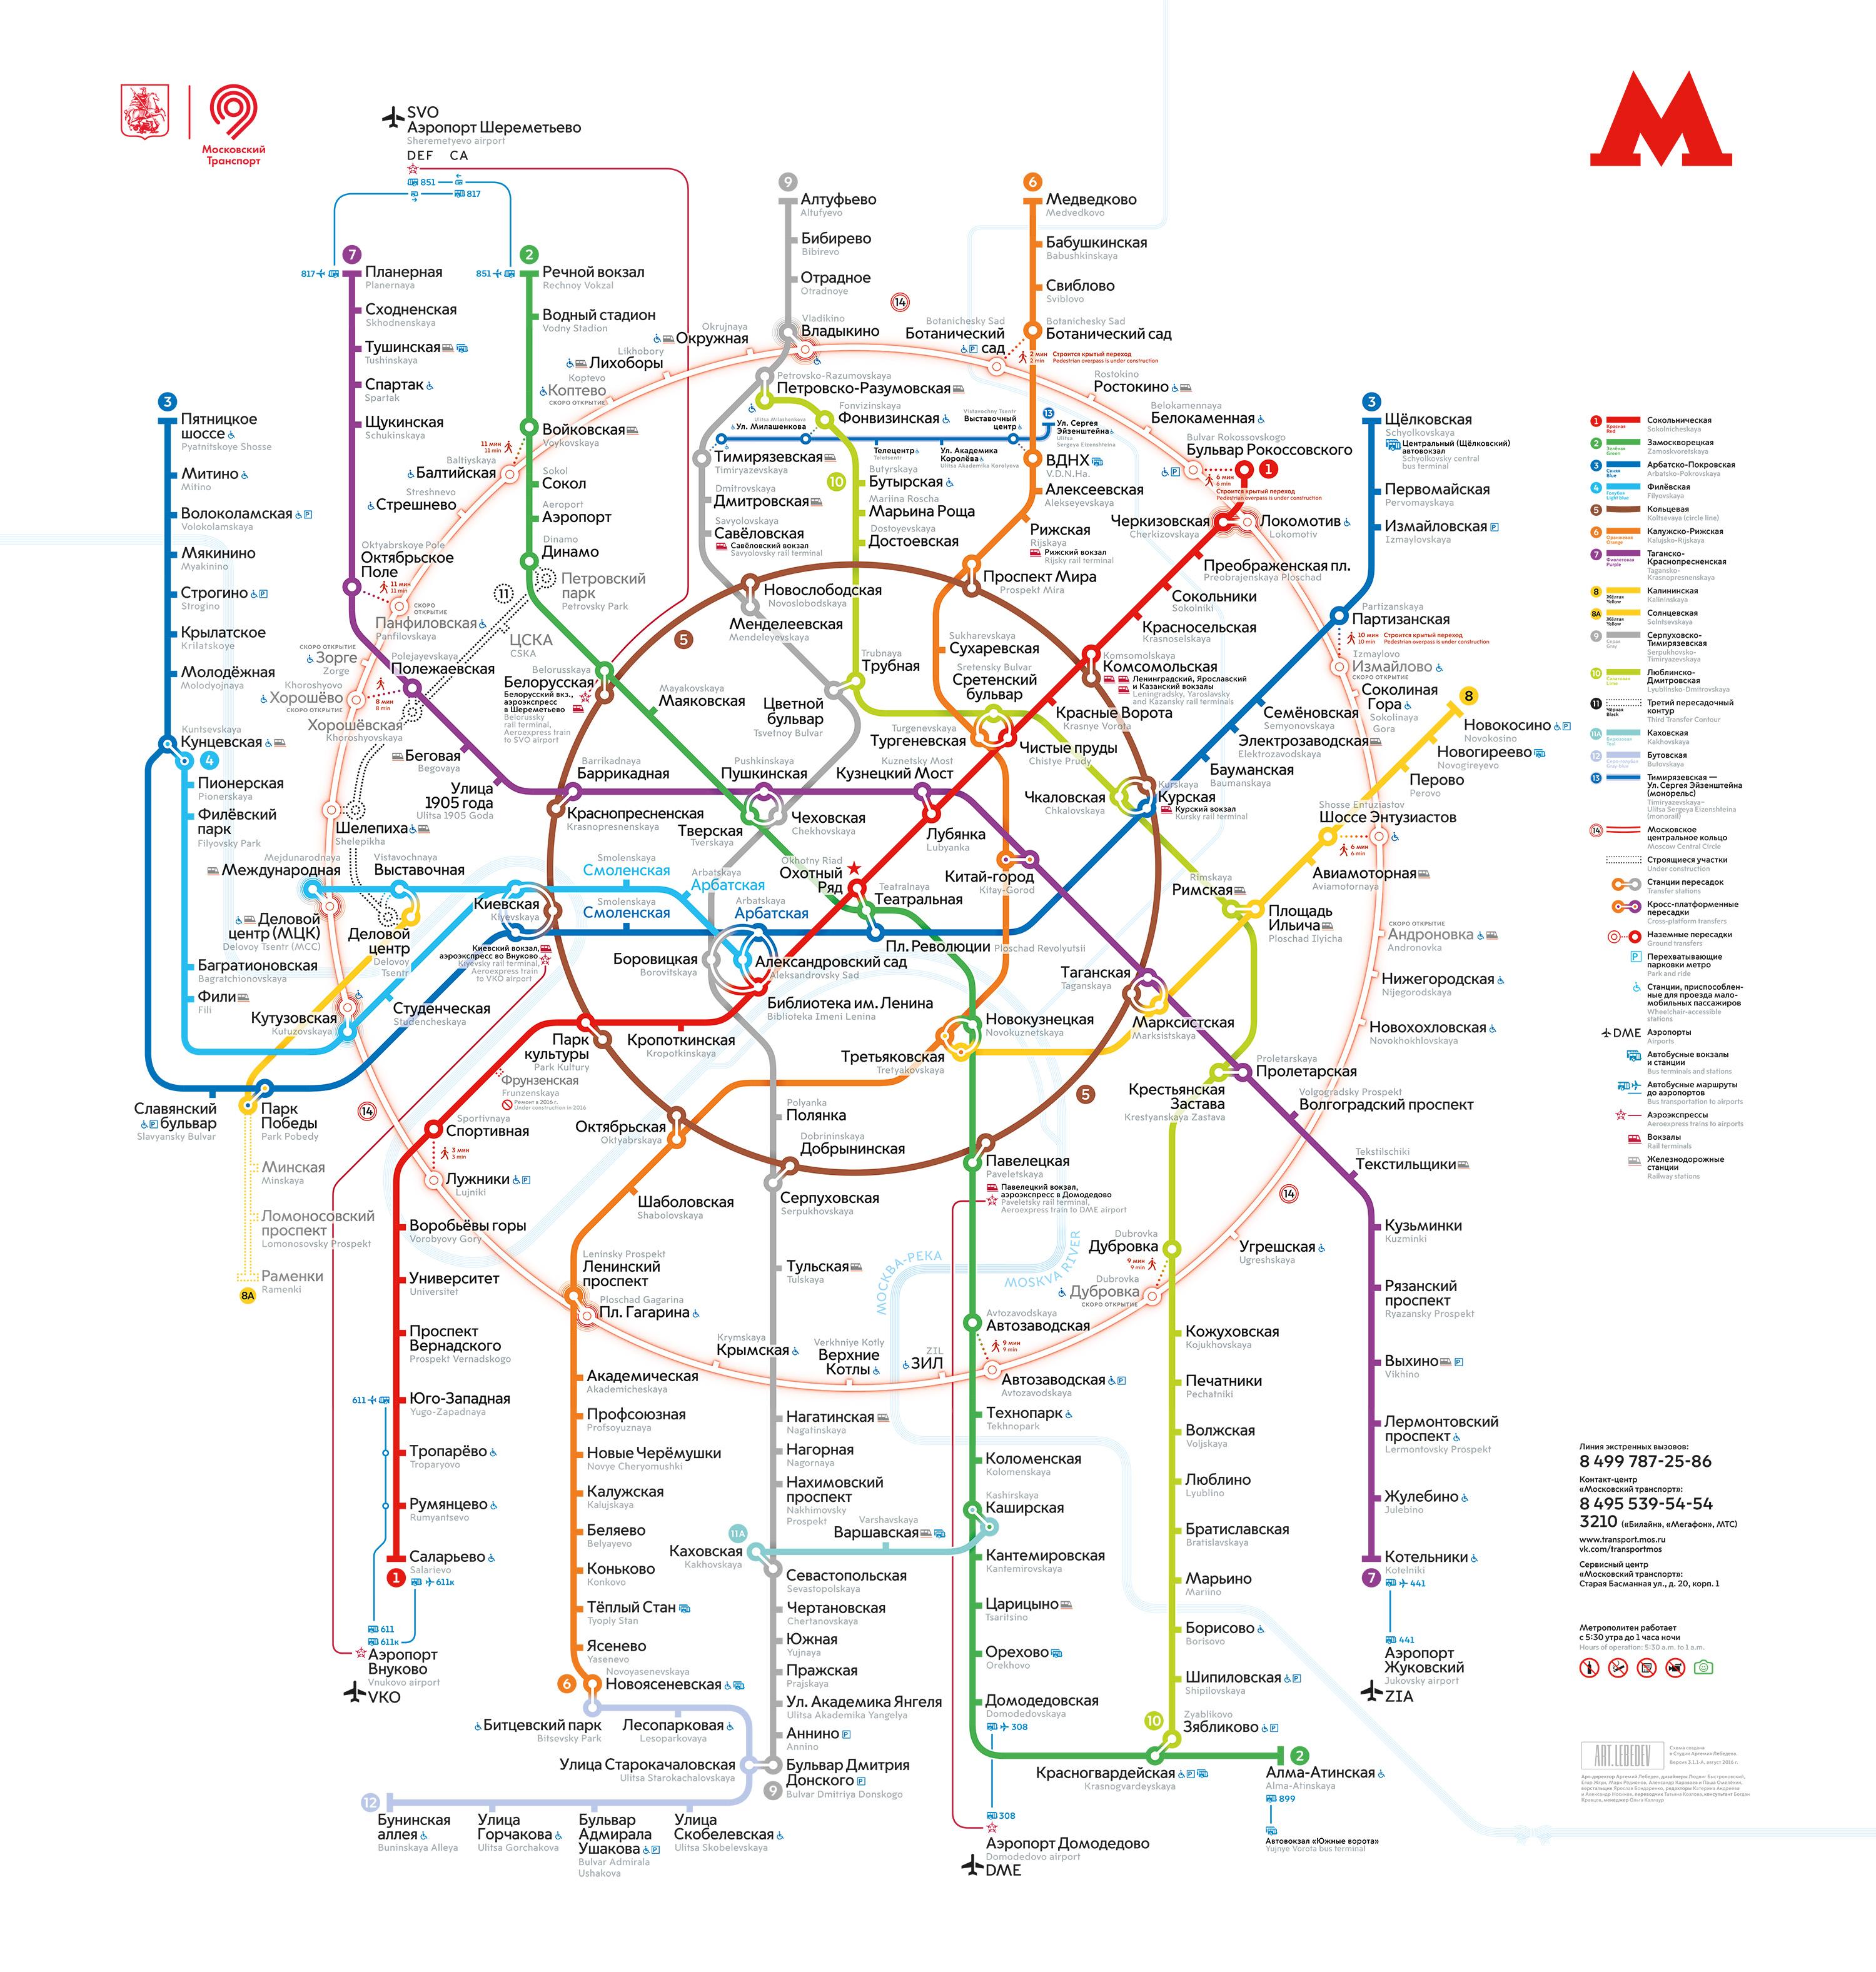 Moscow metro là một trong những hệ thống metro phát triển nhất thế giới. Với bản đồ Moscow metro được cập nhật và chính xác nhất, bạn sẽ thoải mái hơn khi di chuyển và khám phá thành phố nổi tiếng này.